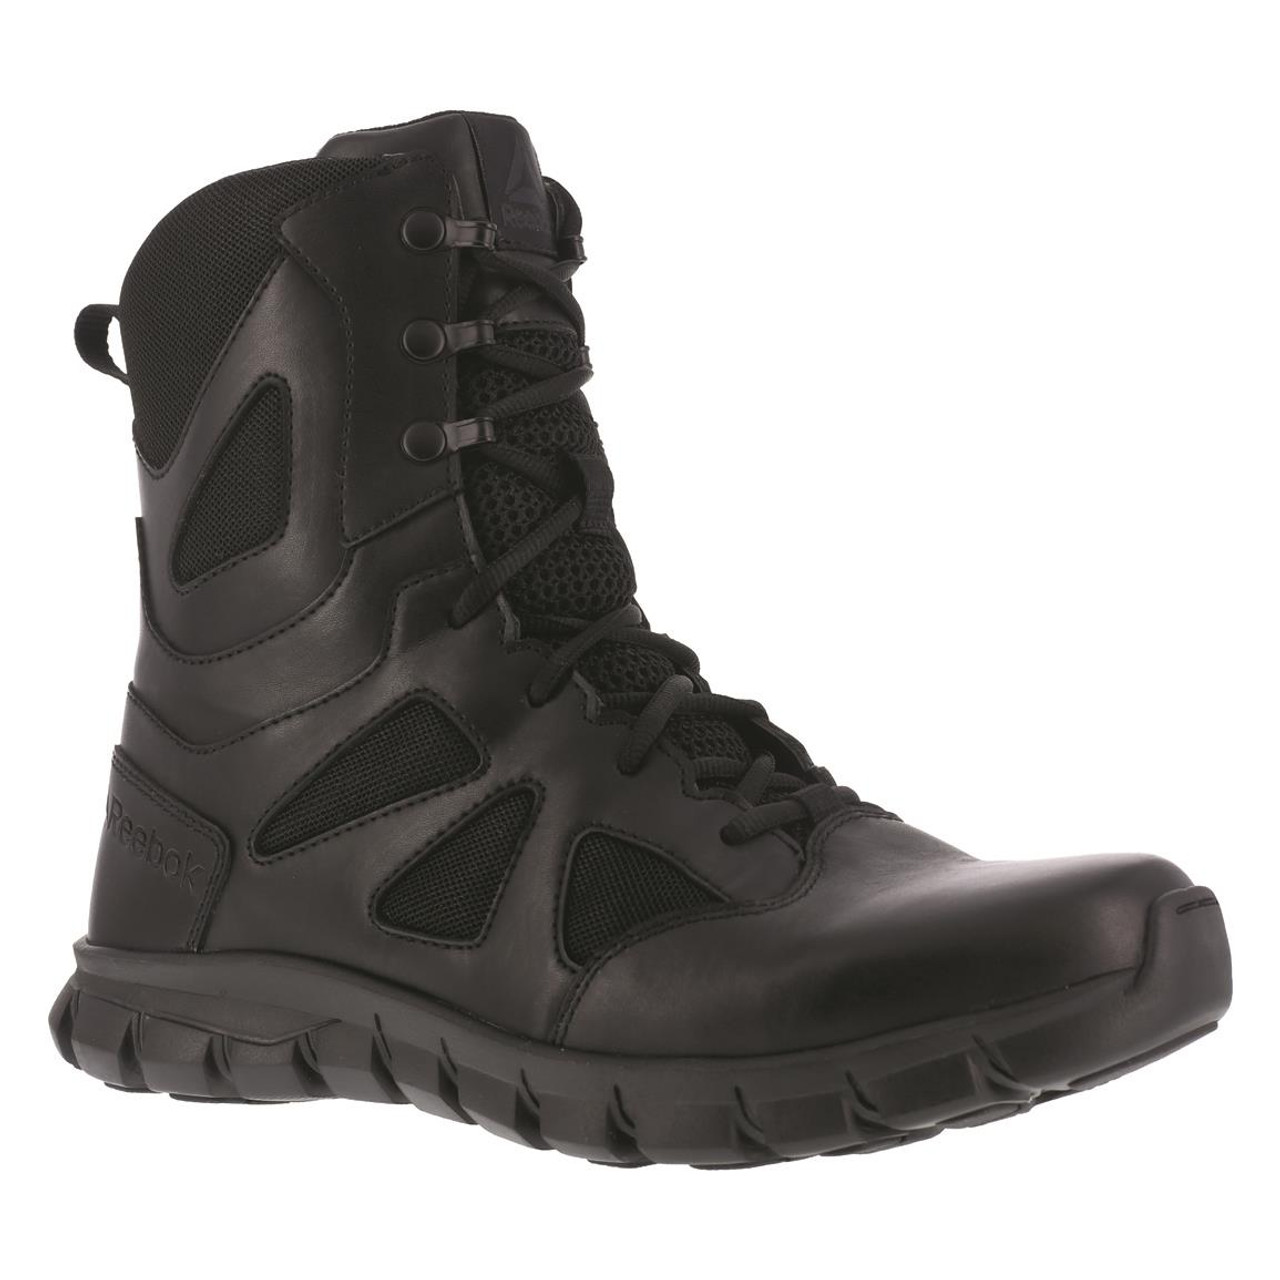 reebok women's duty boots